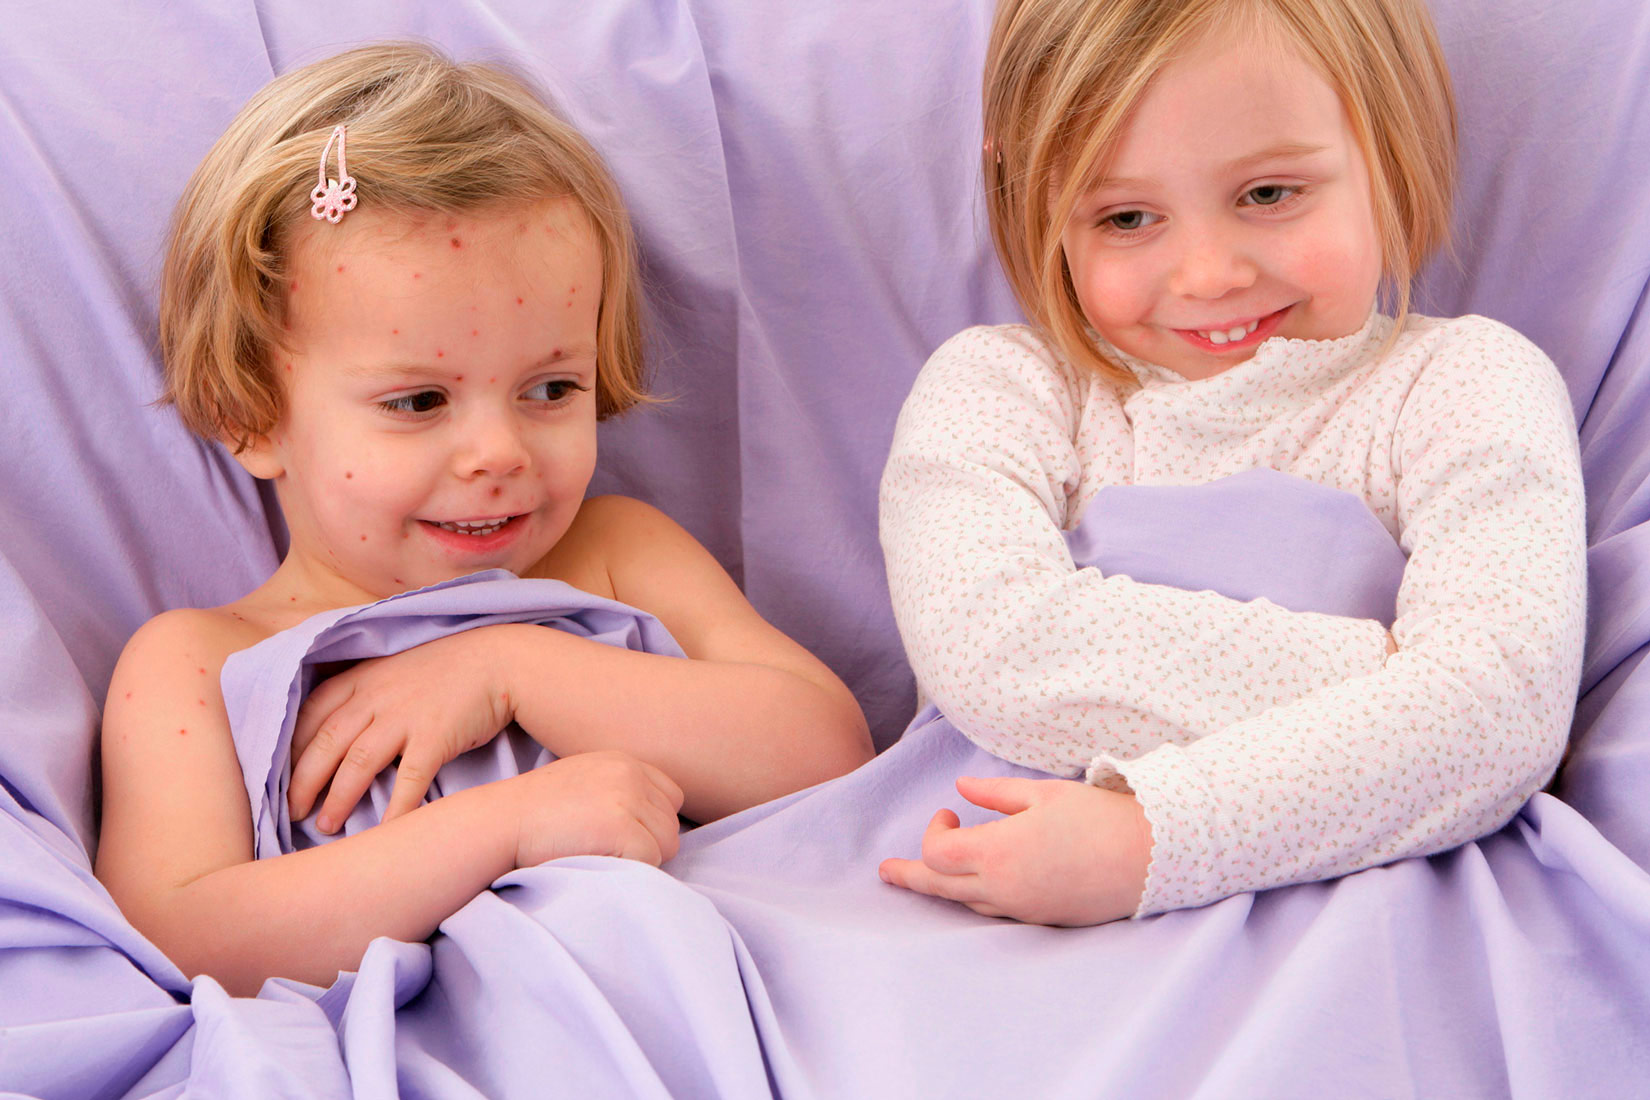 Fotografija prikazuje dvije nasmiješene djevojčice koje leže u krevetu. Jedna djevojčica ima crvene točkice na tijelu -vodene kozice, a druga djevojčica ih nema.